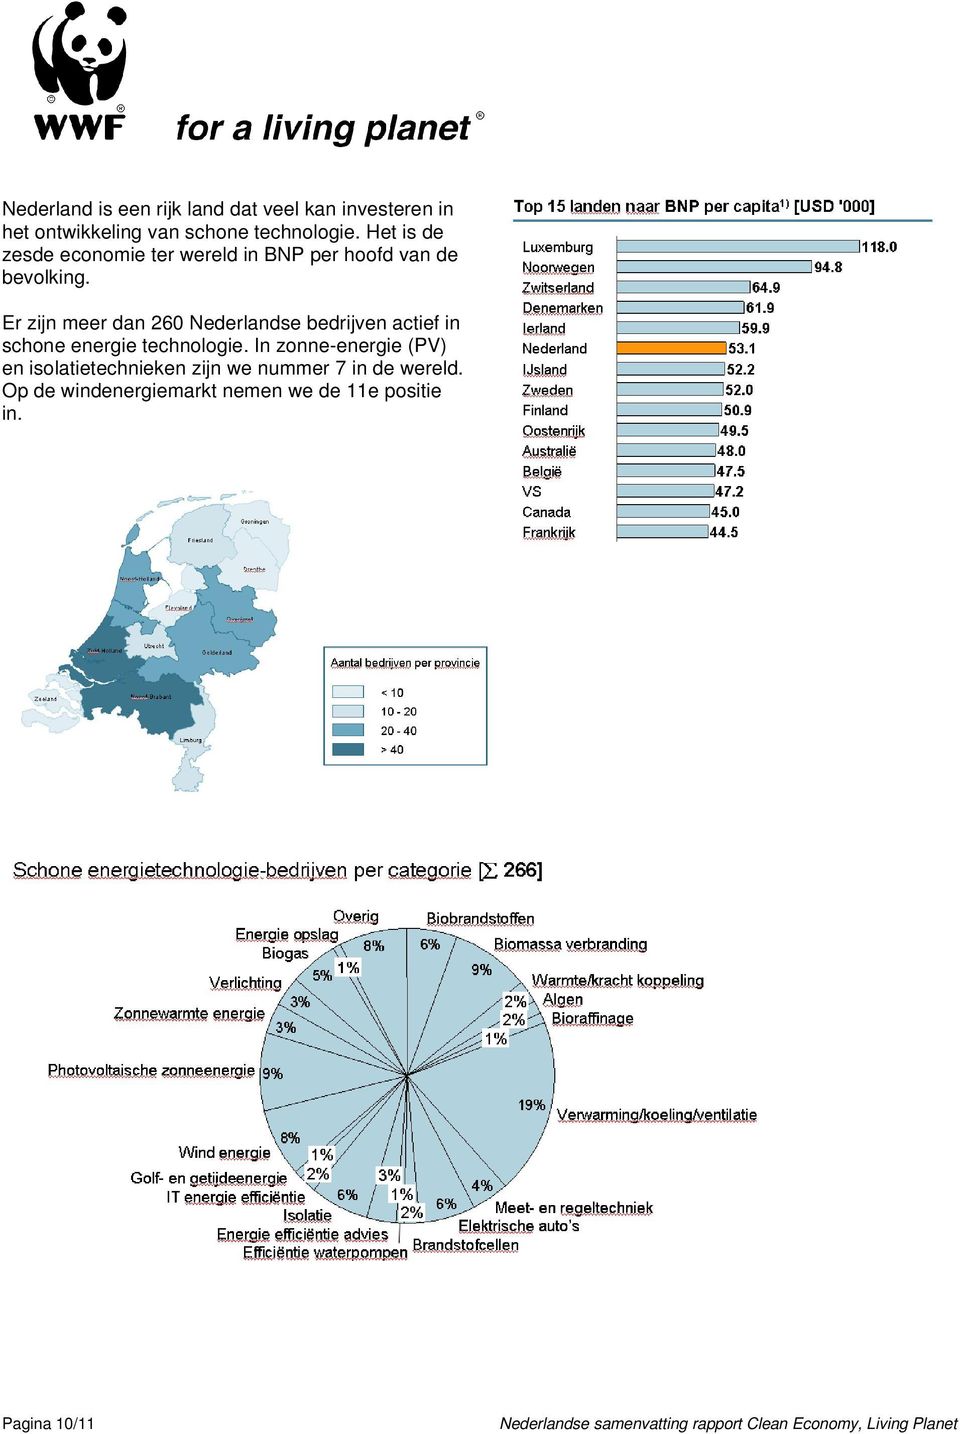 Er zijn meer dan 260 Nederlandse bedrijven actief in schone energie technologie.